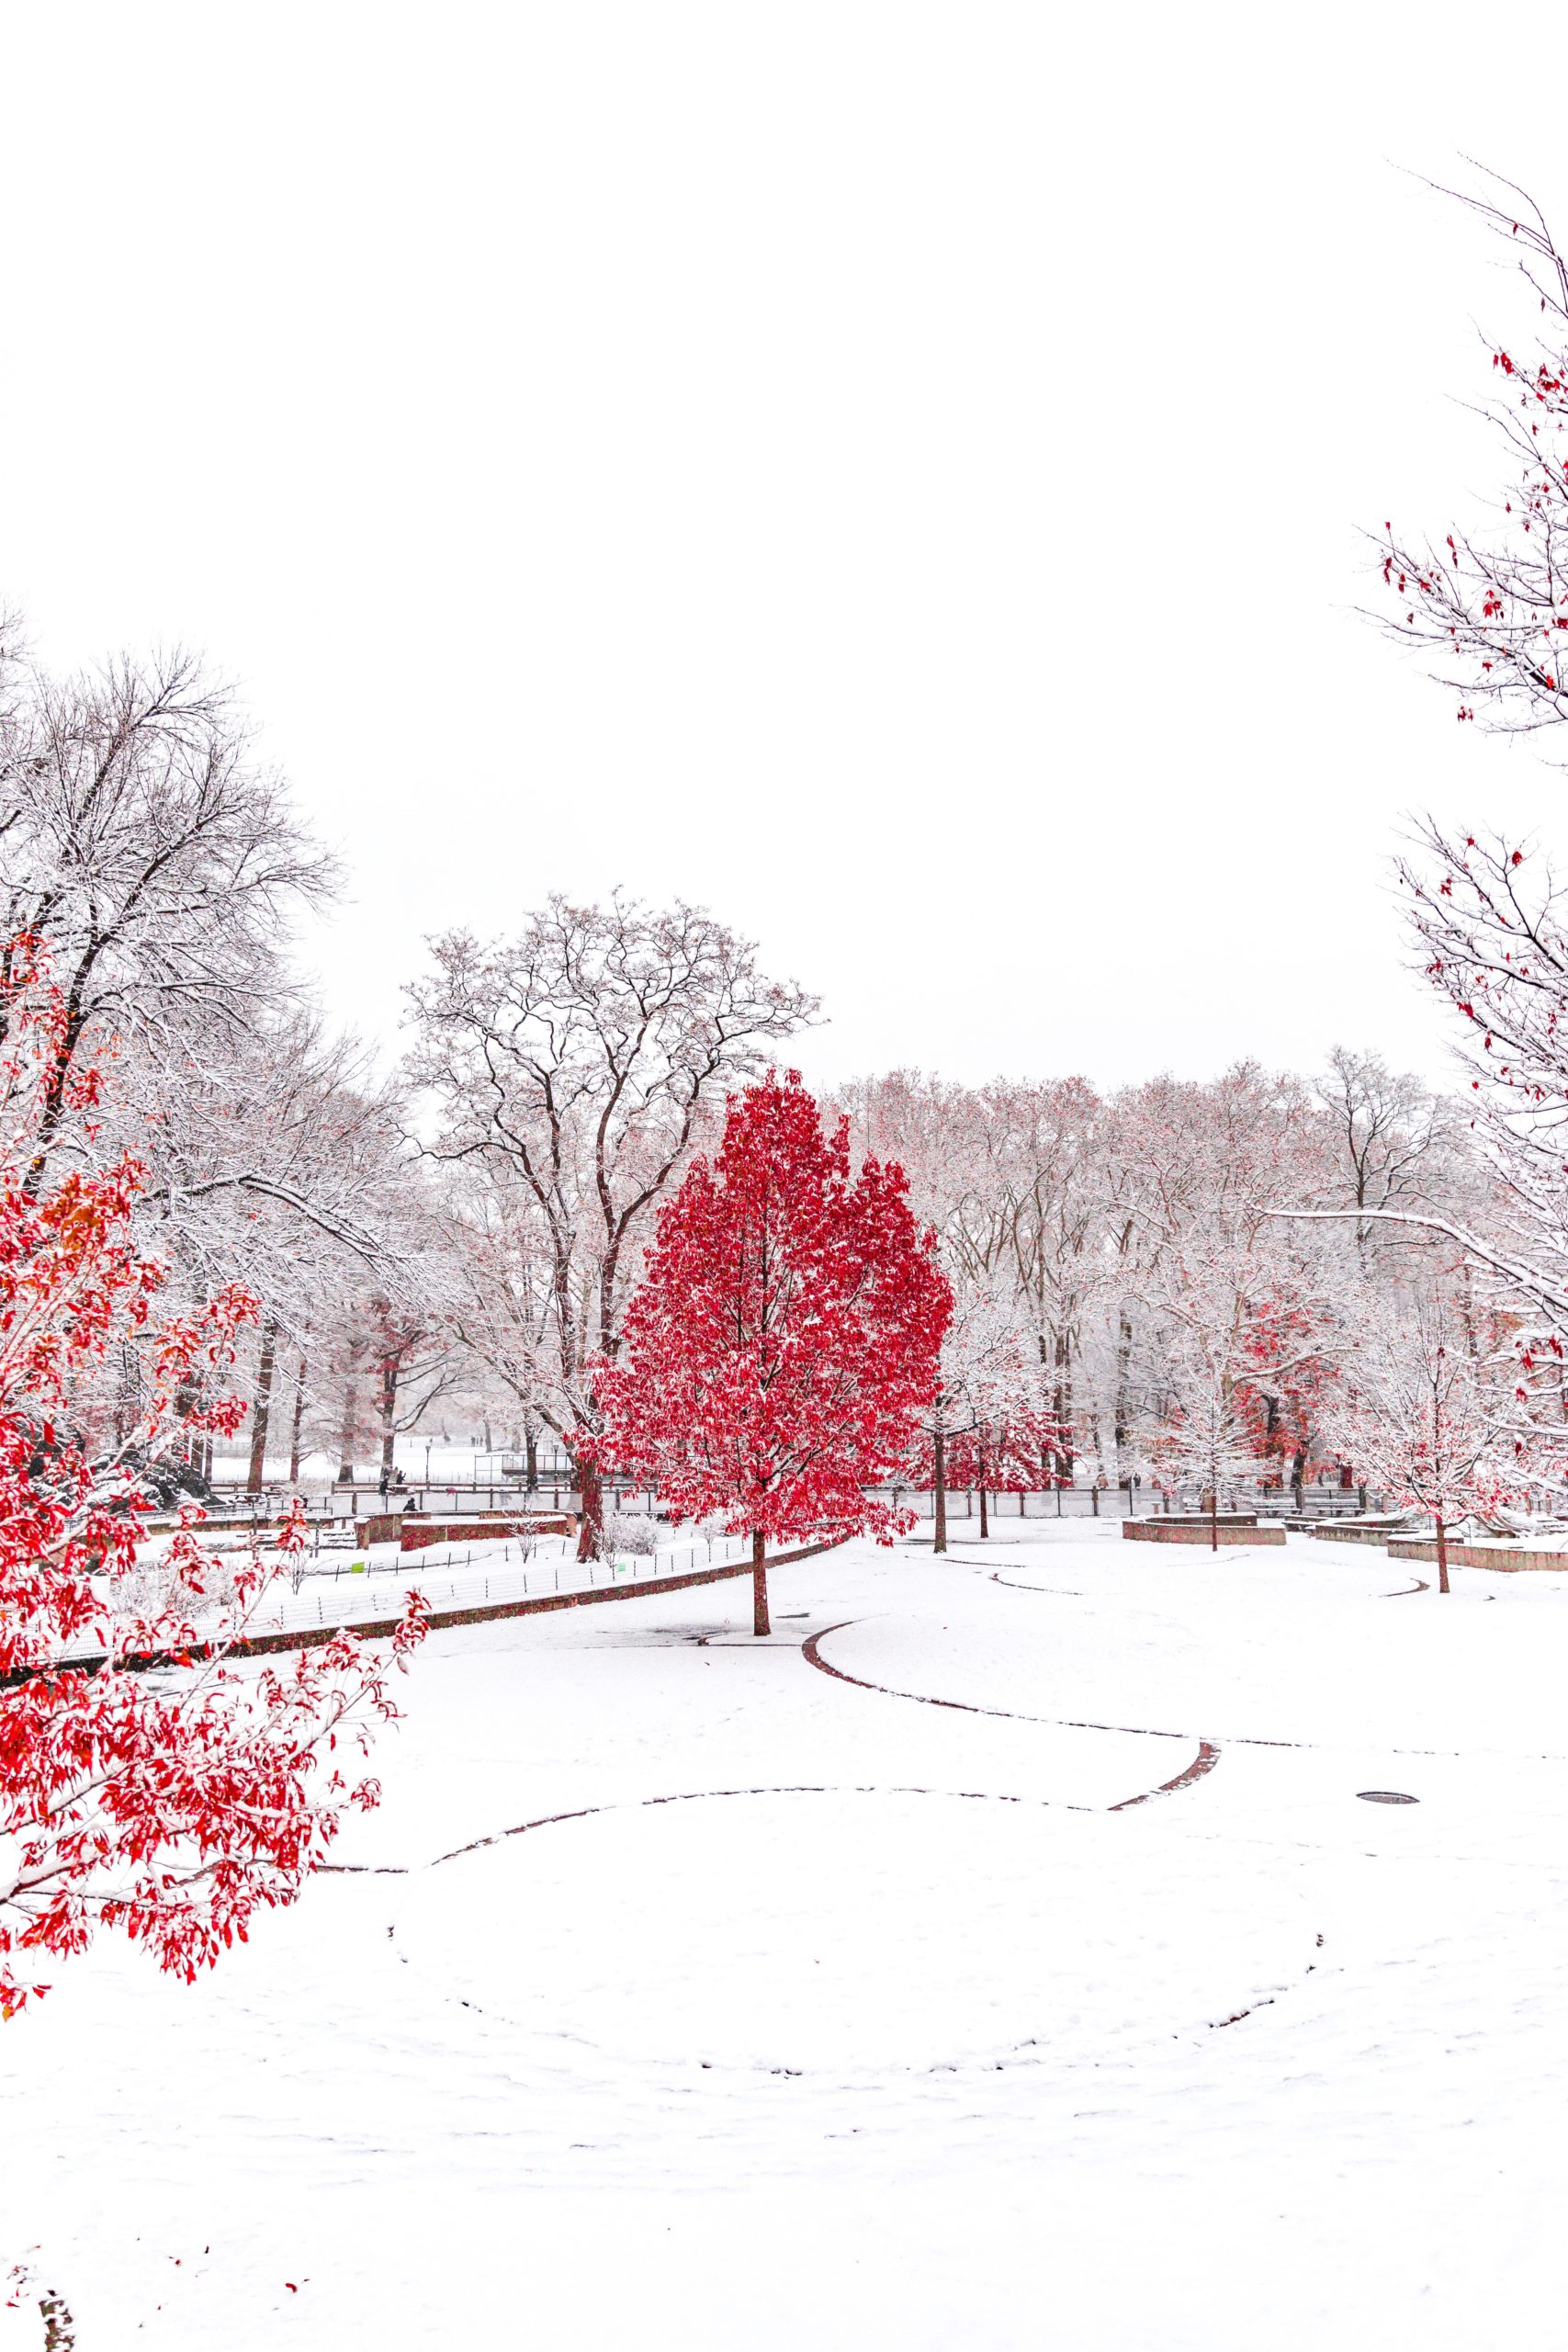 Baum mit rotem Laub in verschneiter Winterlandschaft